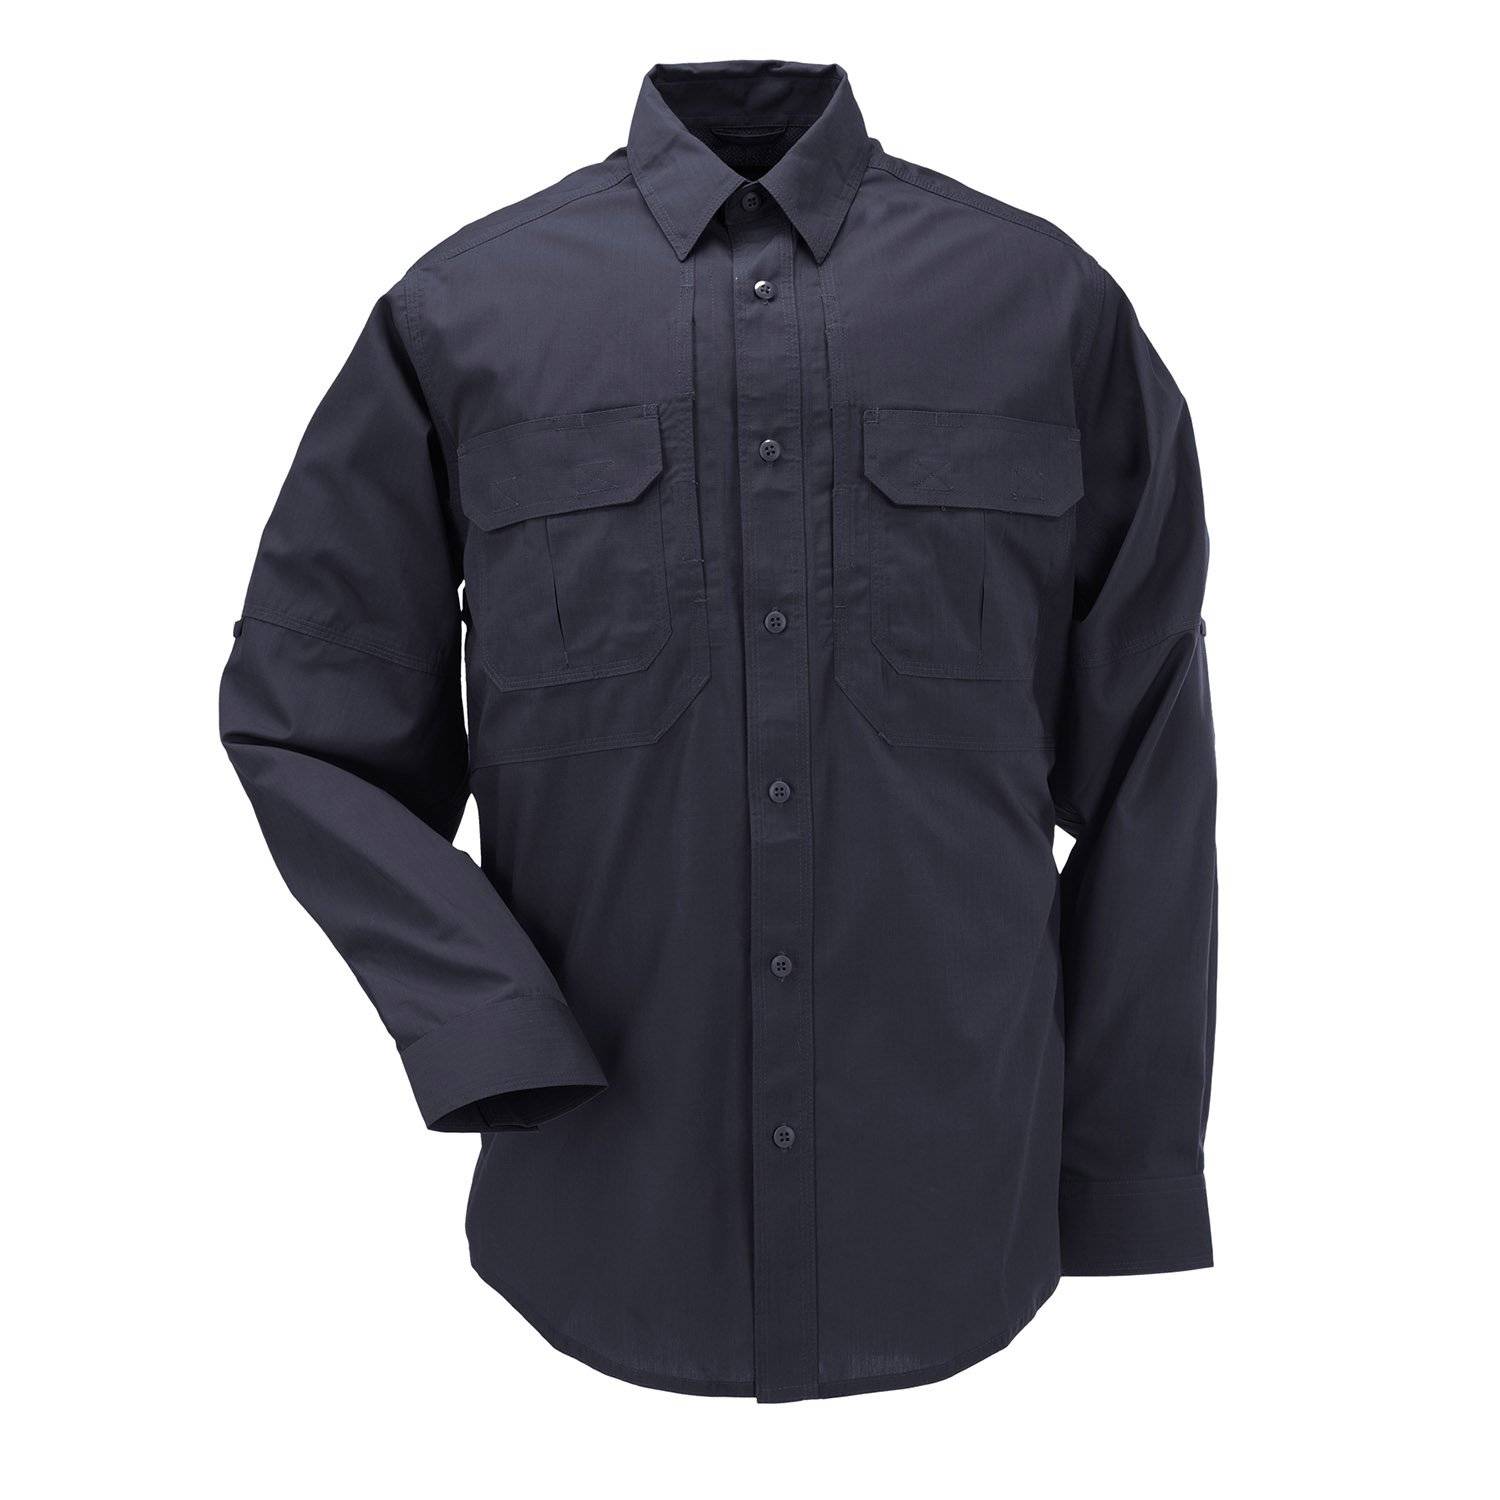 5.11 Tactical TacLite Pro Long Sleeve Shirt